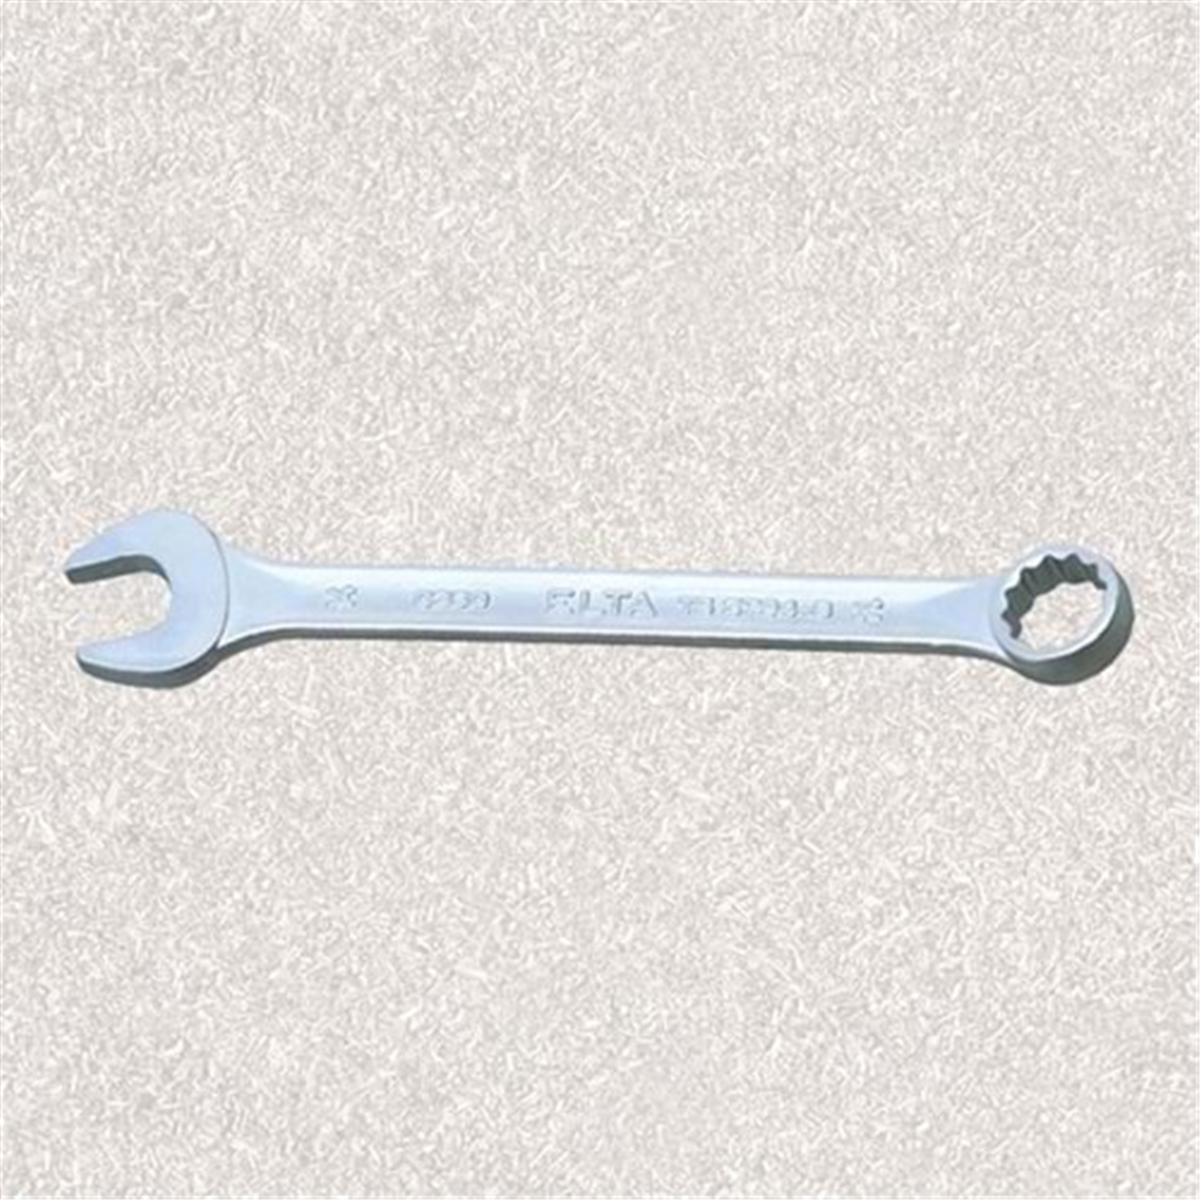 Ключ 5 32. Ключ SATA 42211 (24 / 27 мм). Ключ SATA 43218 (30 мм). Ключ SATA 42212 (30 / 32 мм). Ключ комбинированный gross.